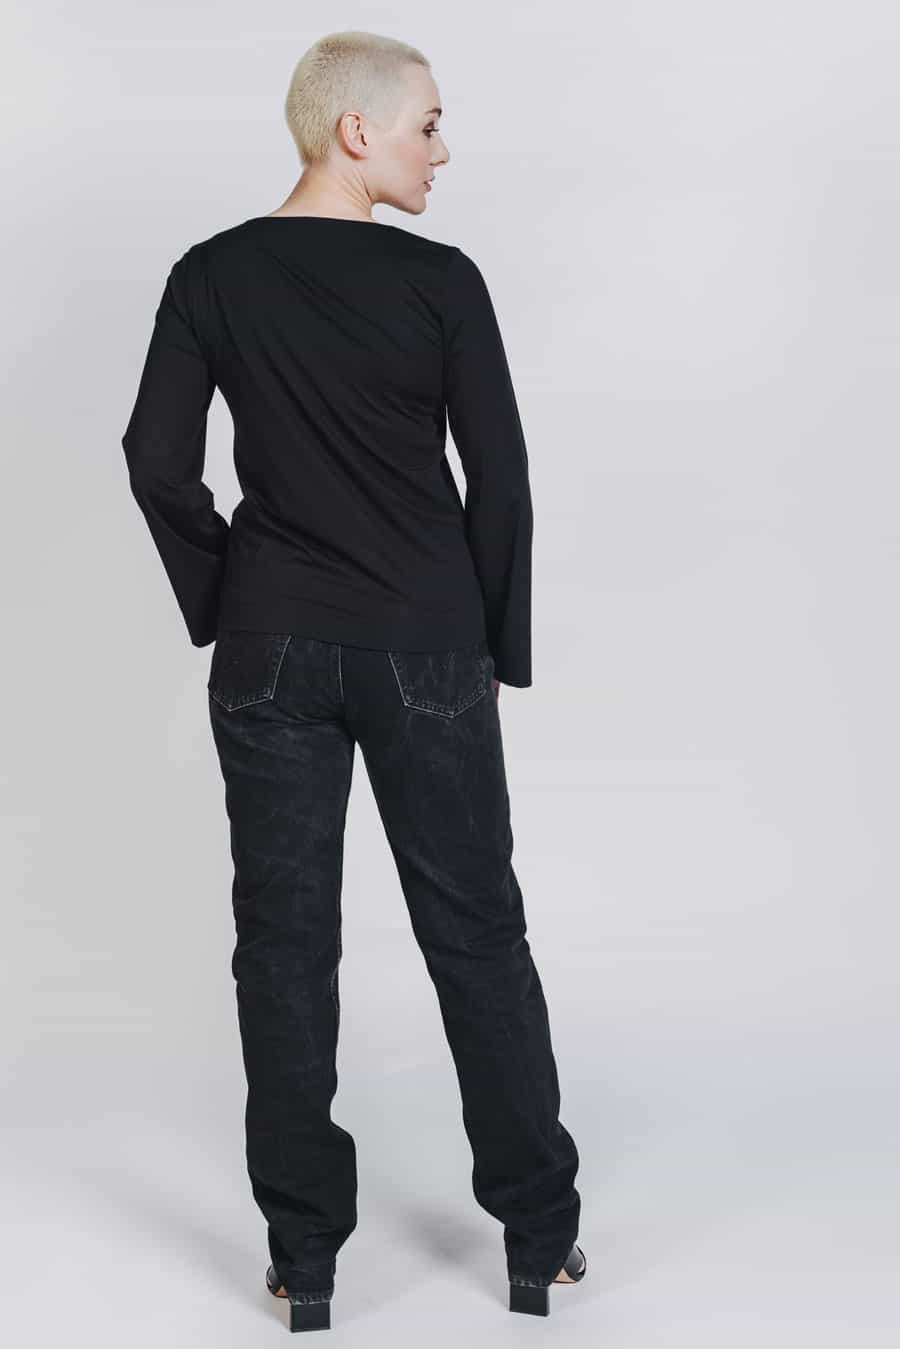 Deep White Black Modell KAYA basic Langarmshirt Damen schwarz mit Jeans schwarz, Rundhalsausschnitt und weite Ärmel, Ansicht von hinten